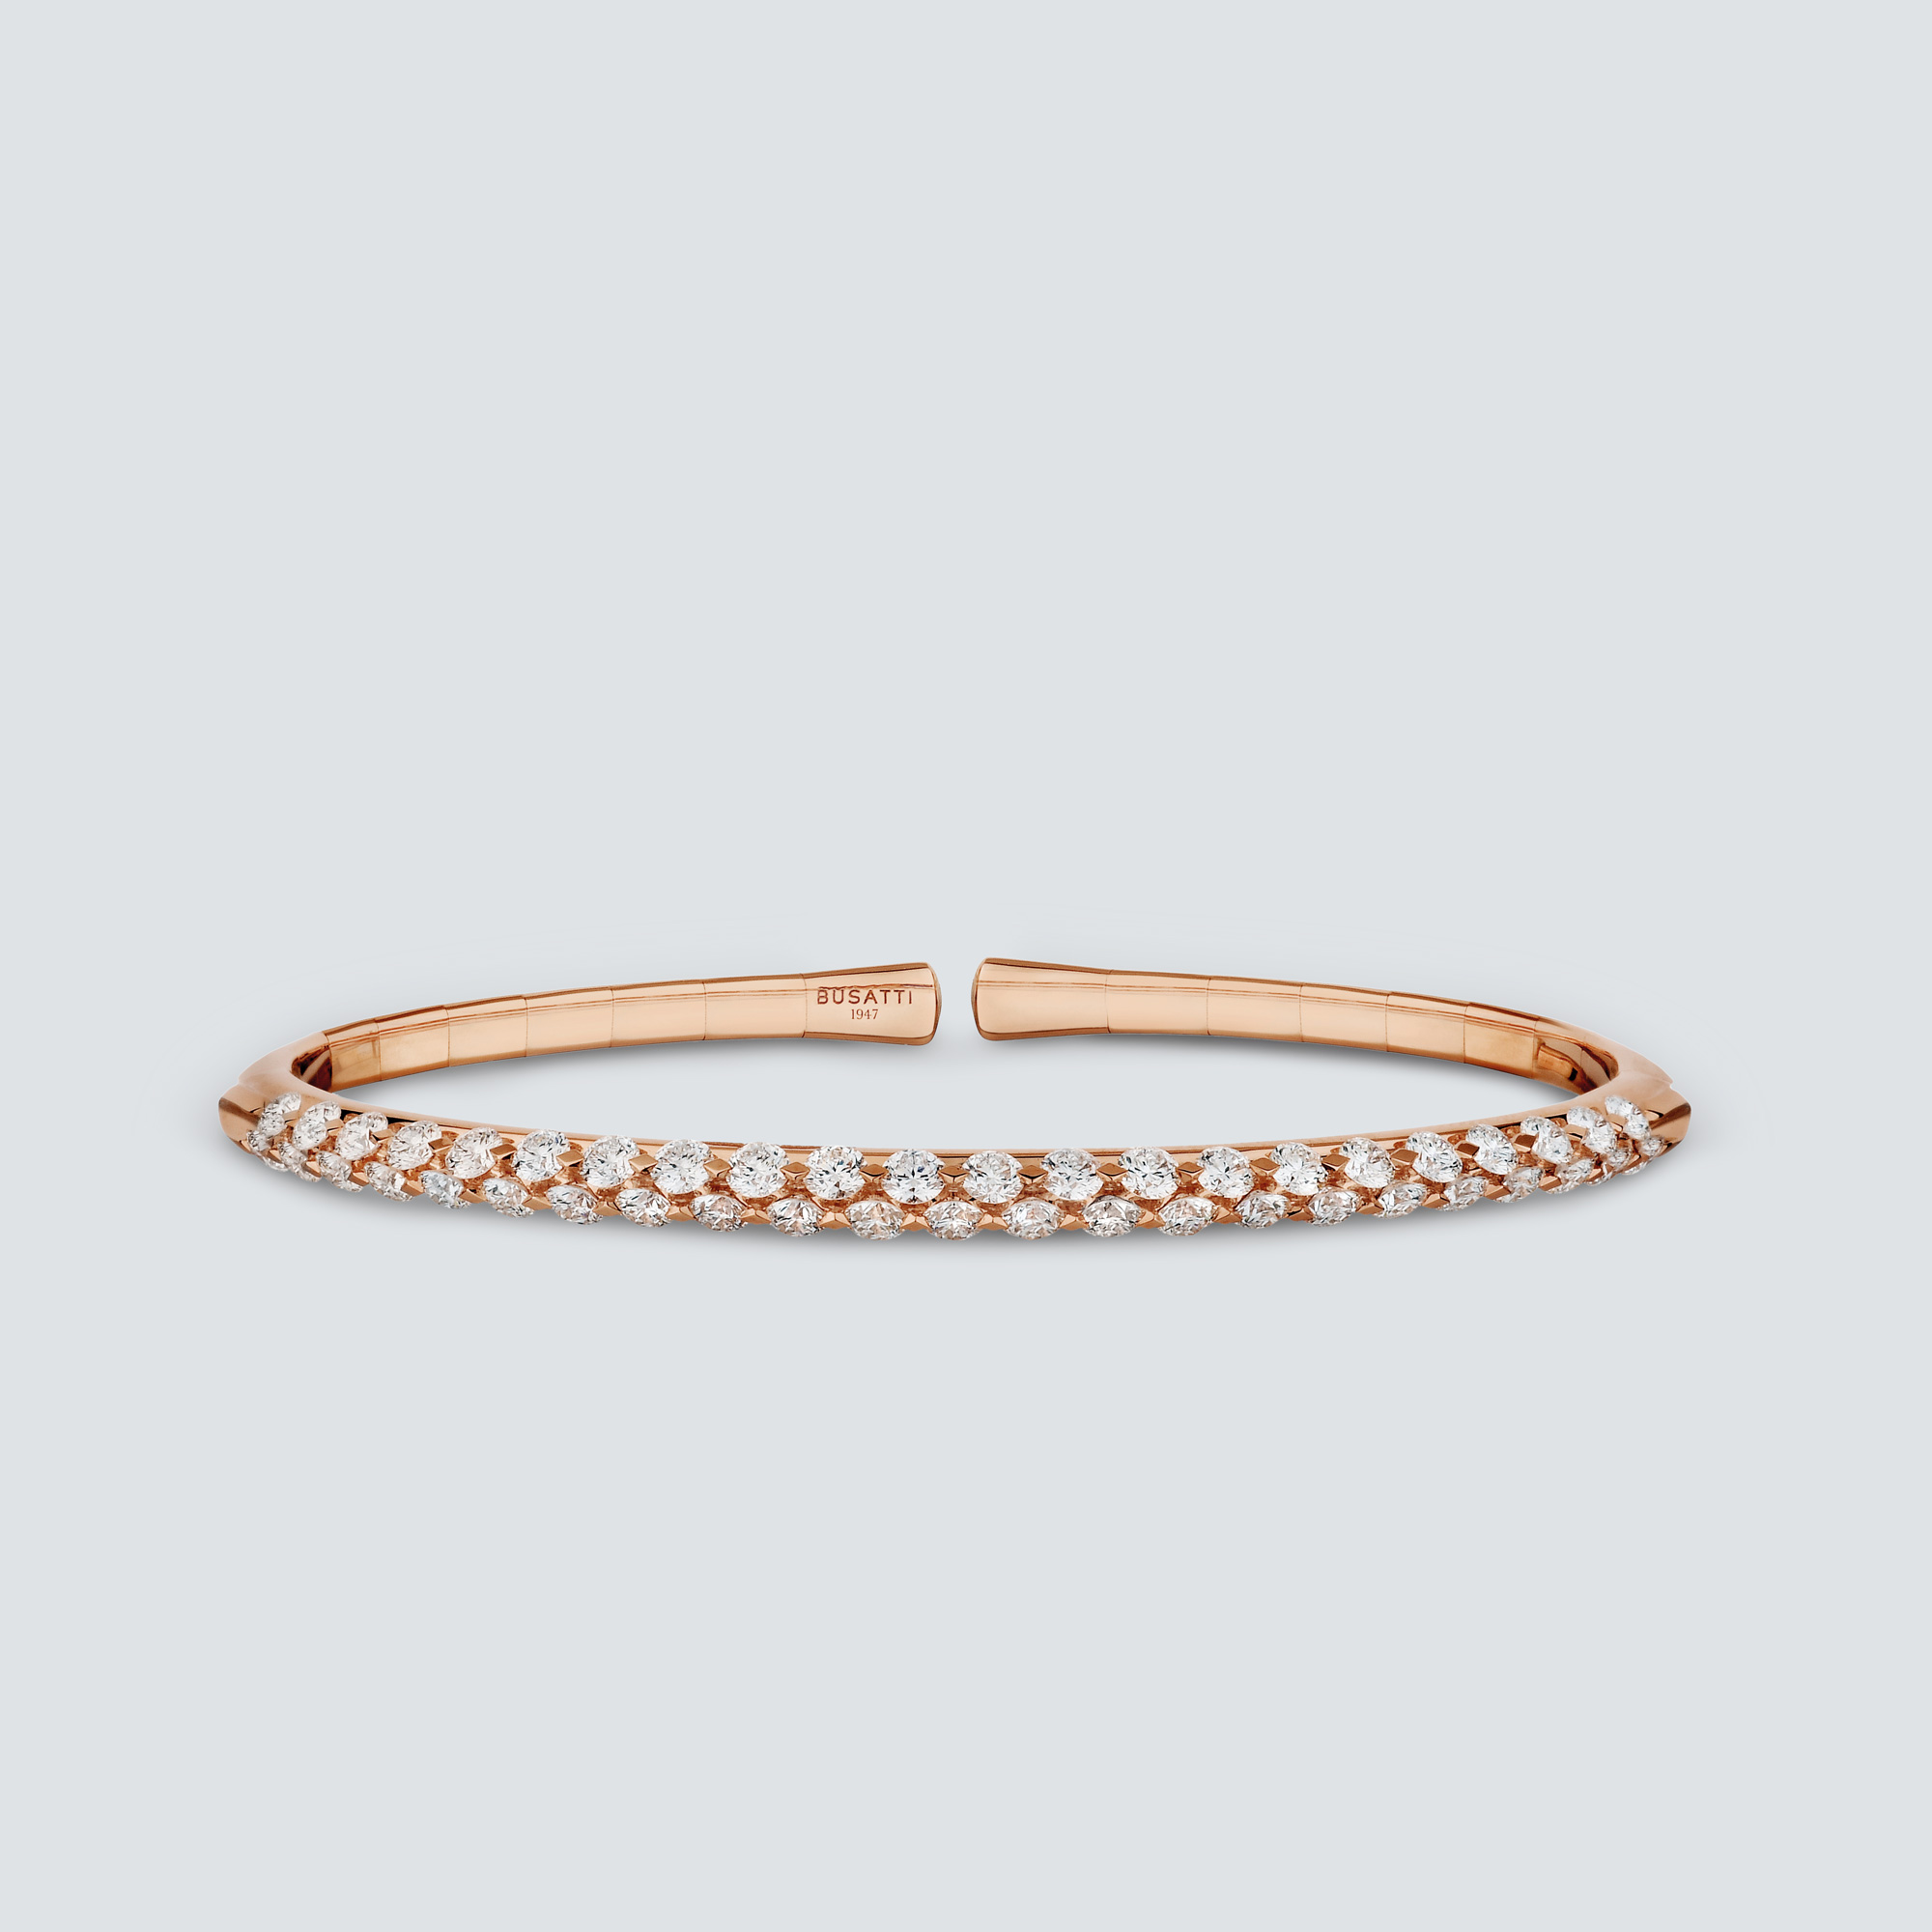 Busatti_Venice_collection-small-bangle-bracelets-rose-gold